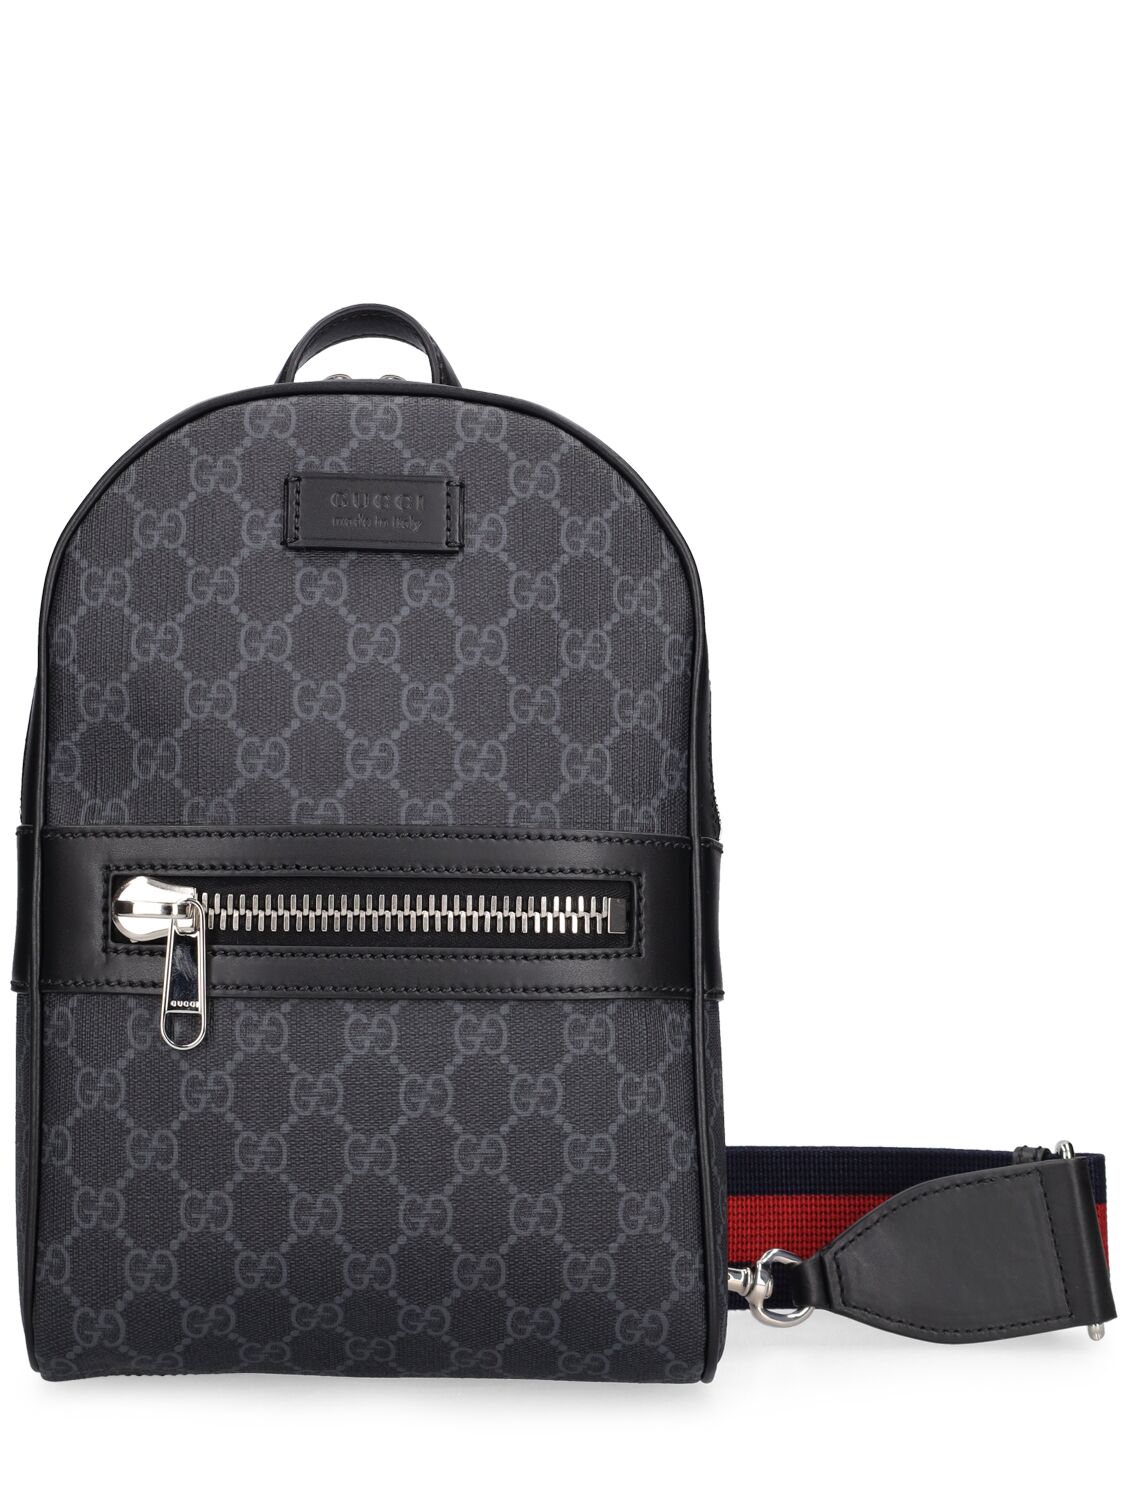 Gucci Gg Supreme Crossbody Bag In Black